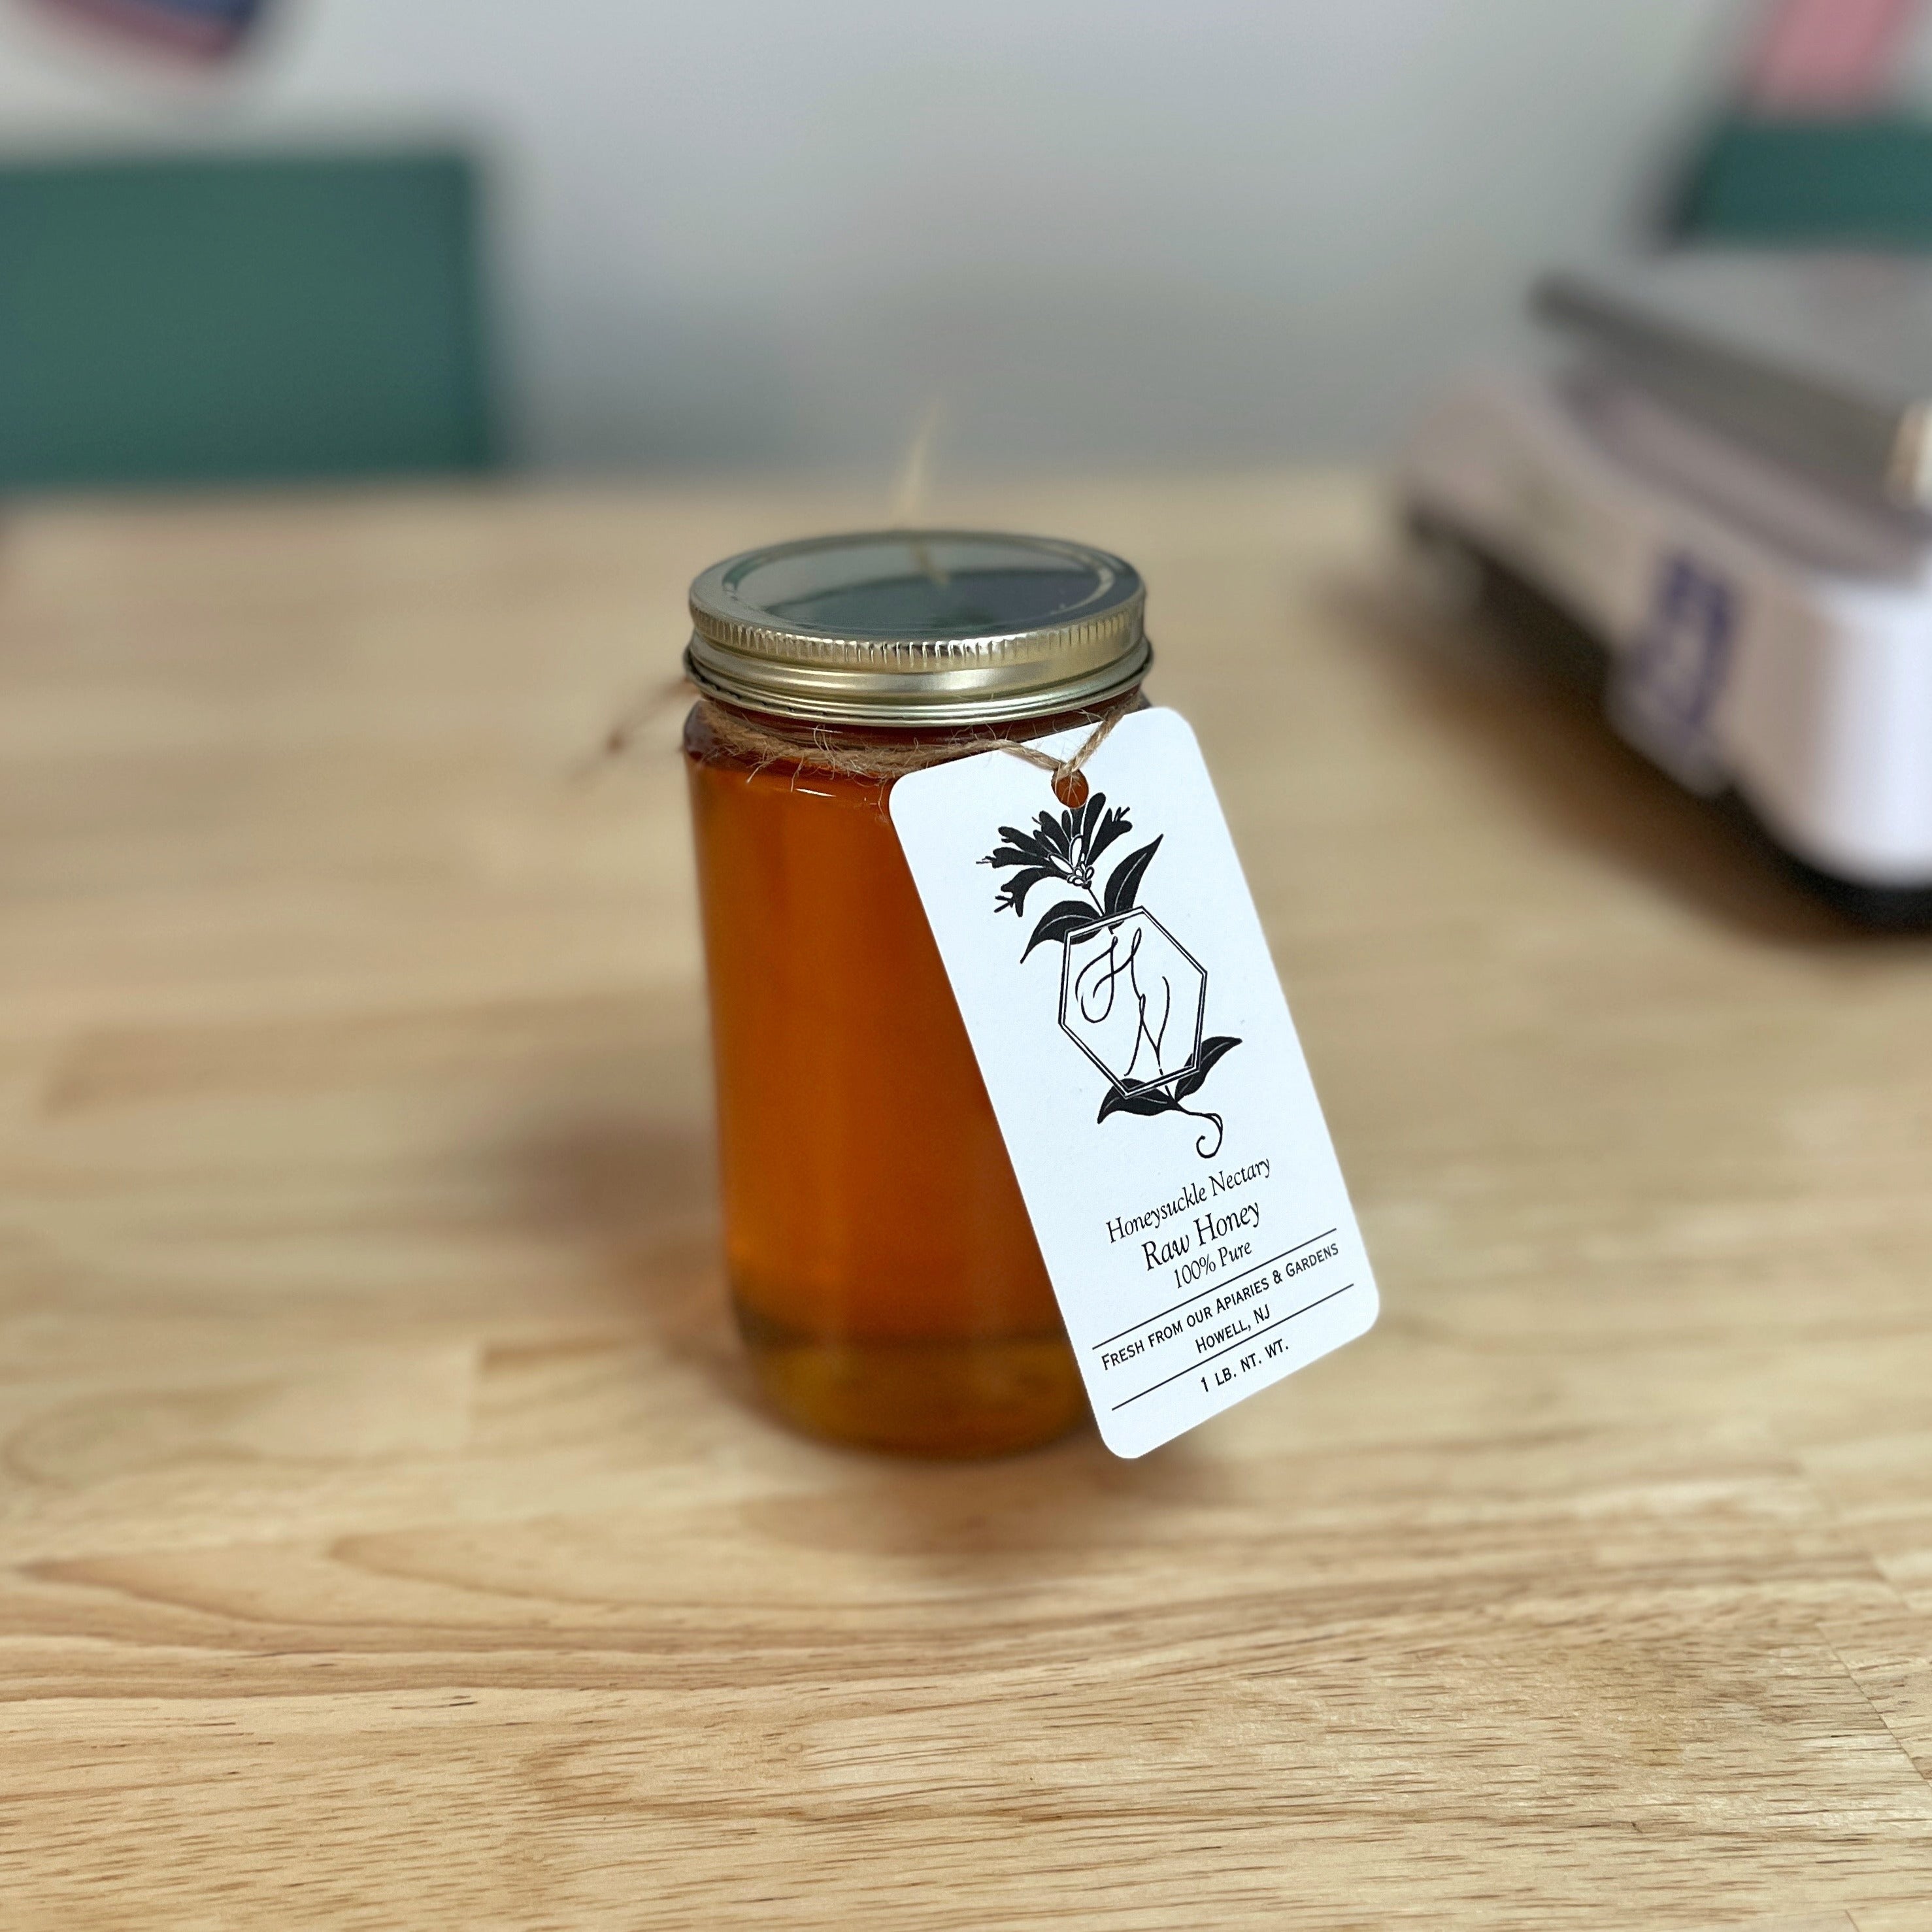 Honeysuckle Nectary | Raw Local Honey